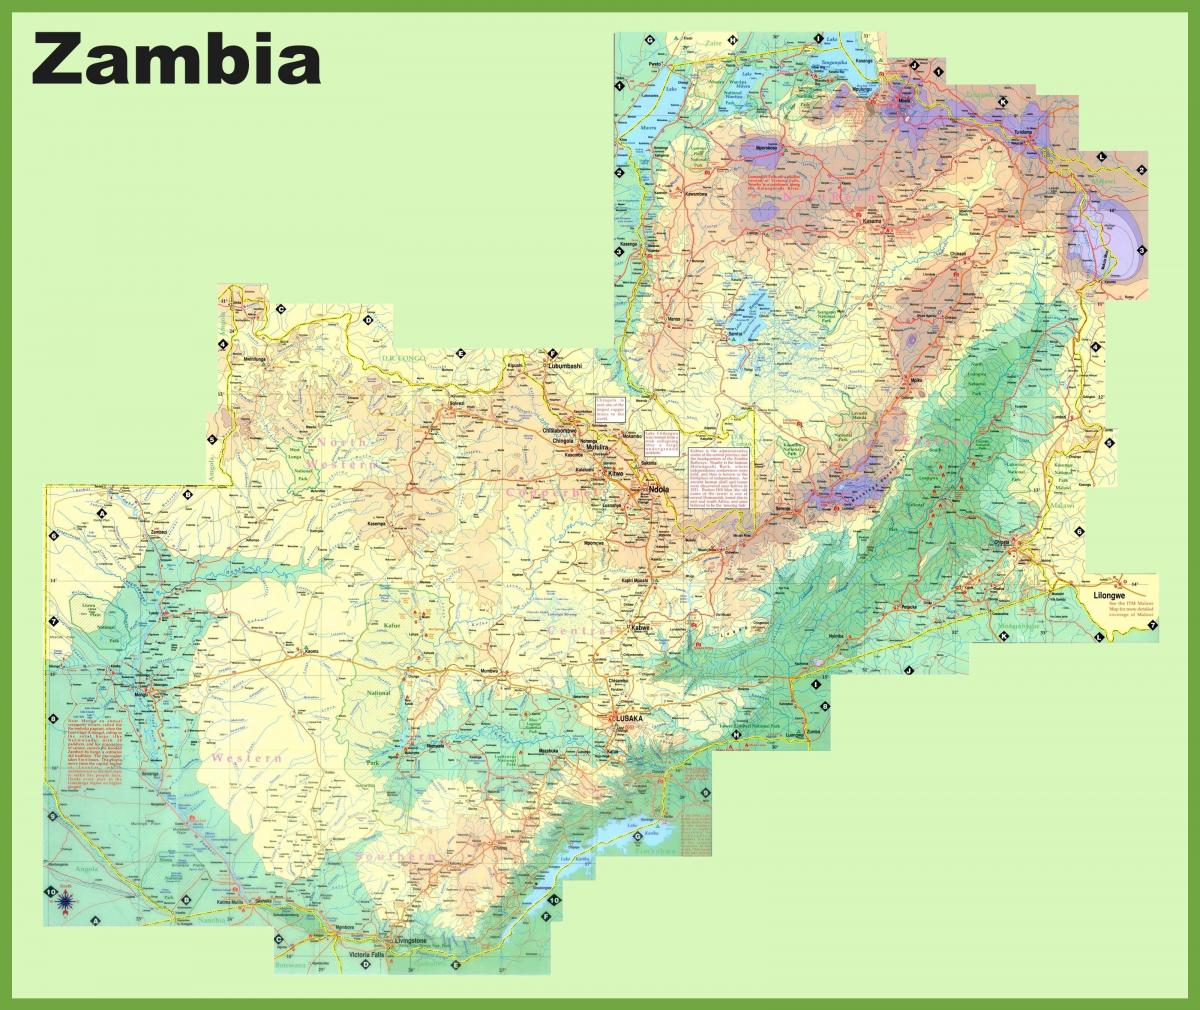 χάρτης της Ζάμπια που δείχνει όλες τις πόλεις